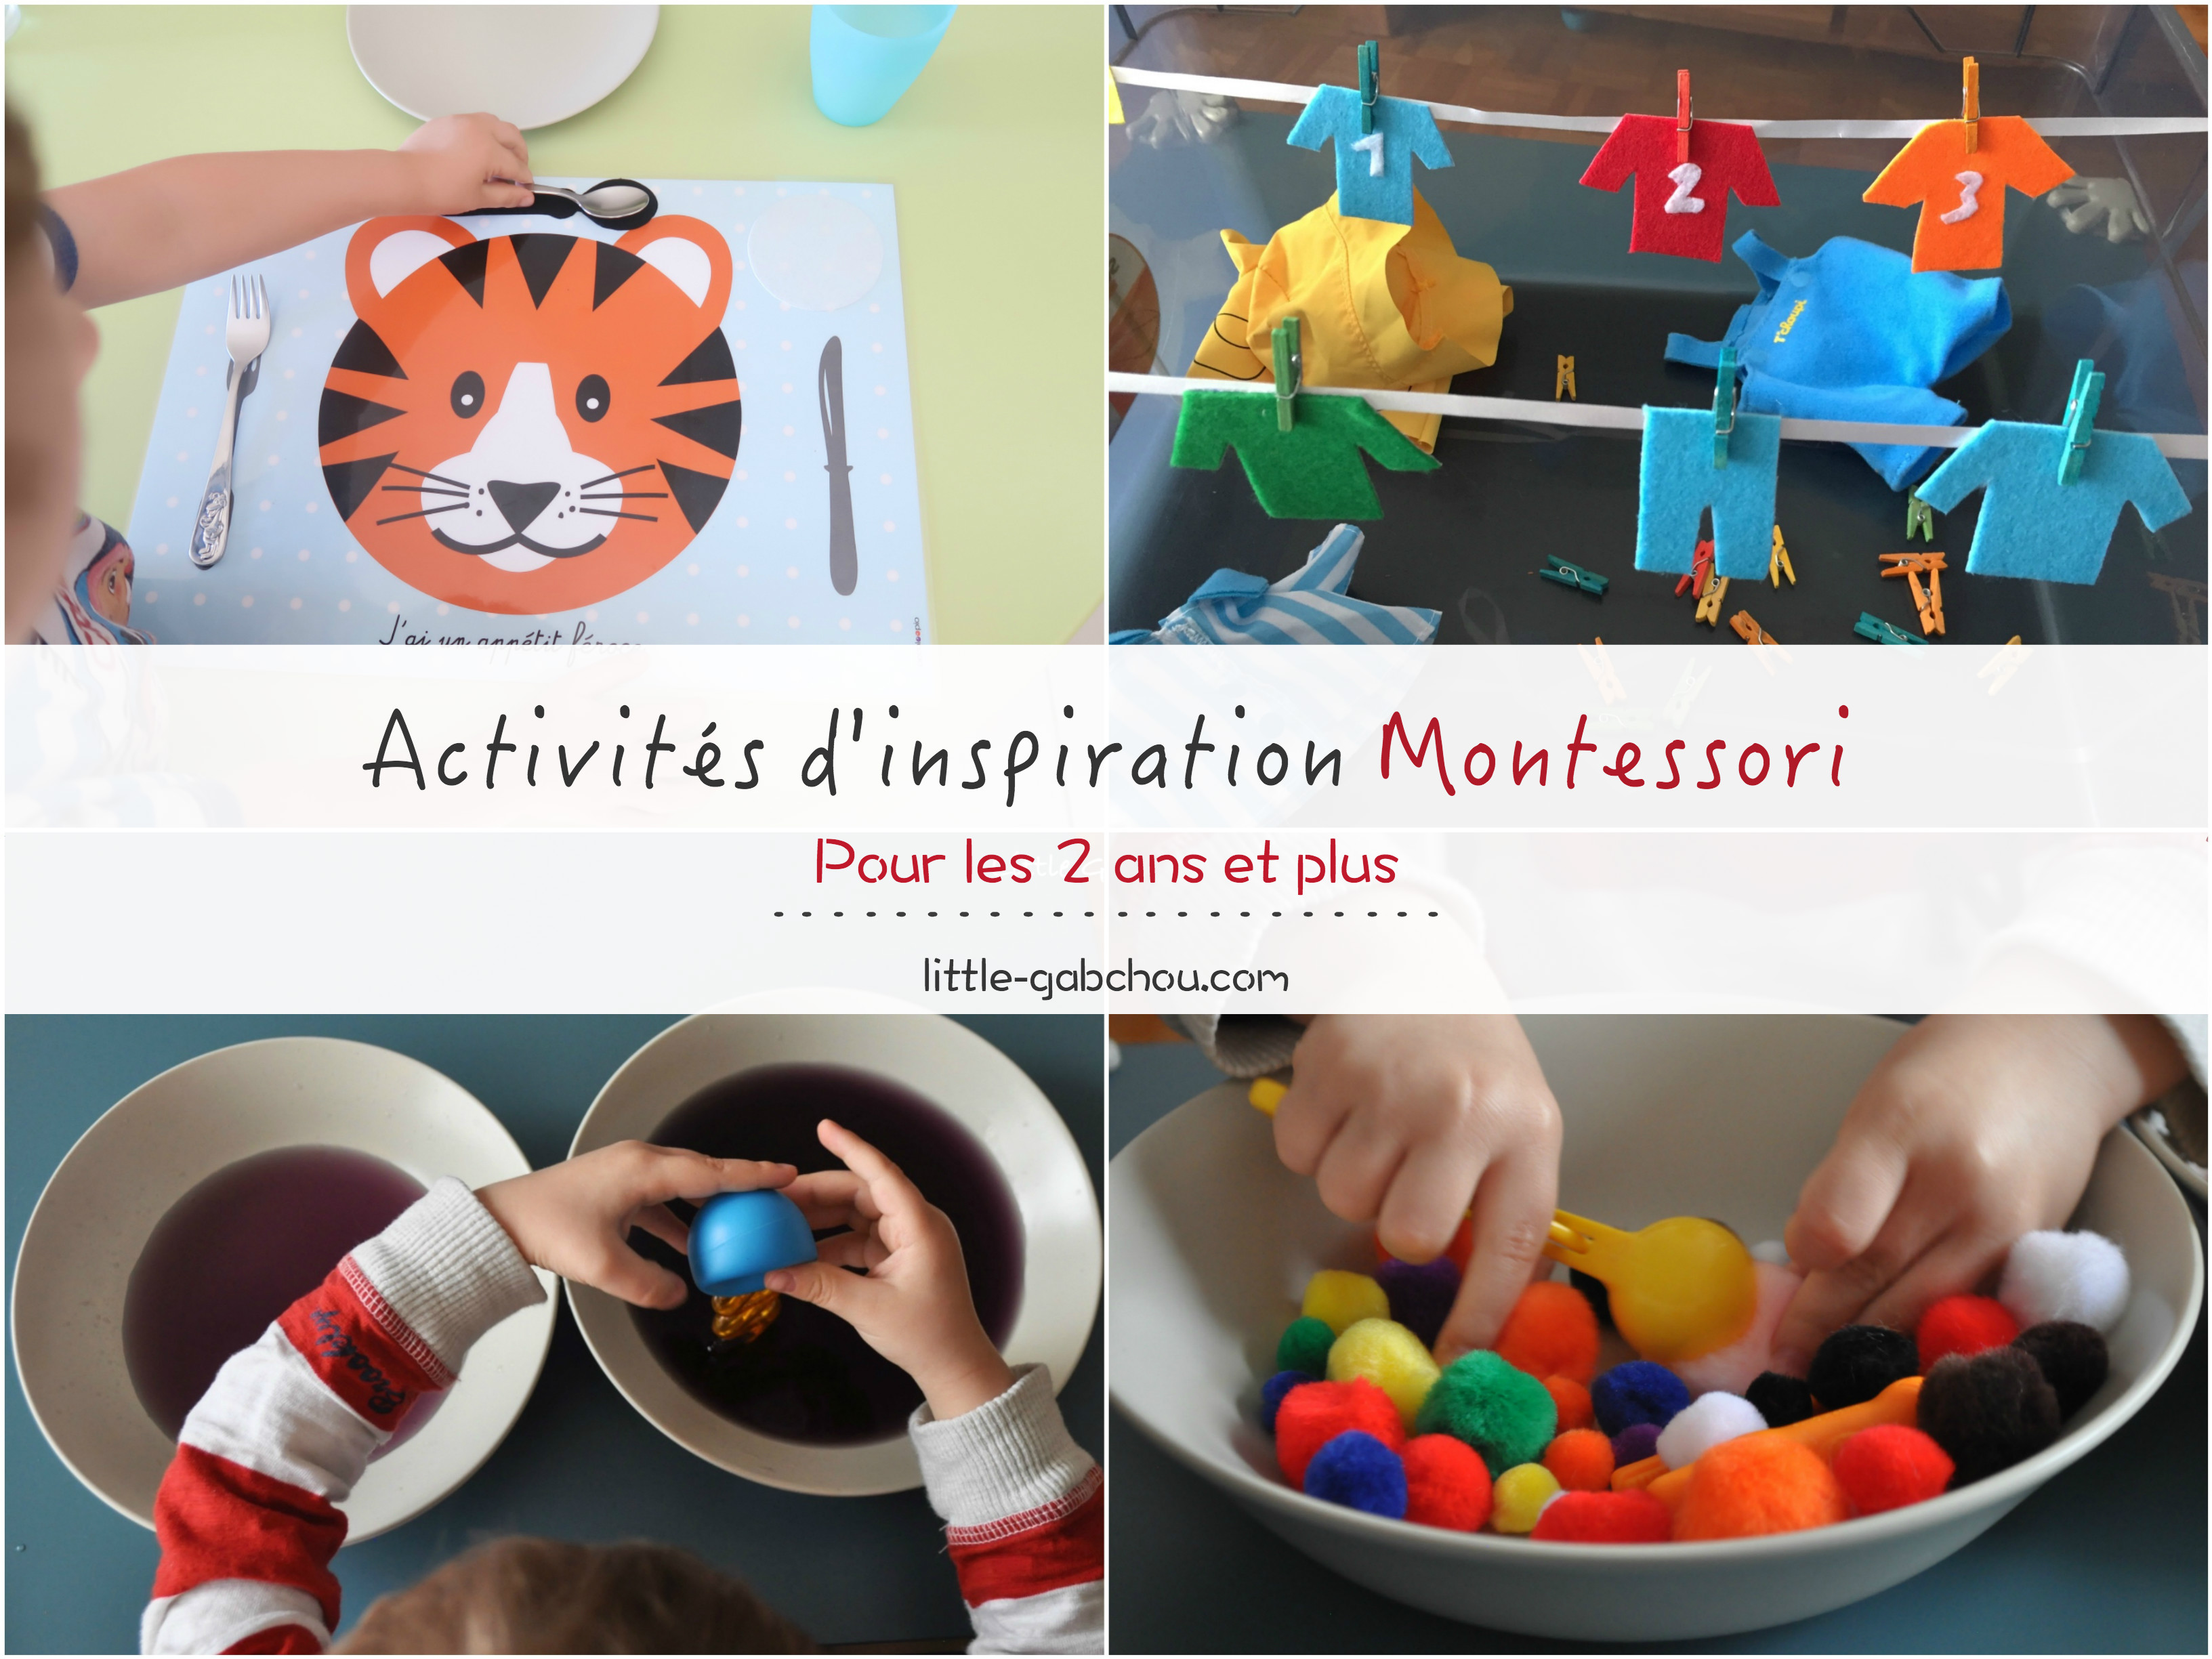 Nos Activites Preferees D Inspiration Montessori Pour Les 2 Ans Et Plus